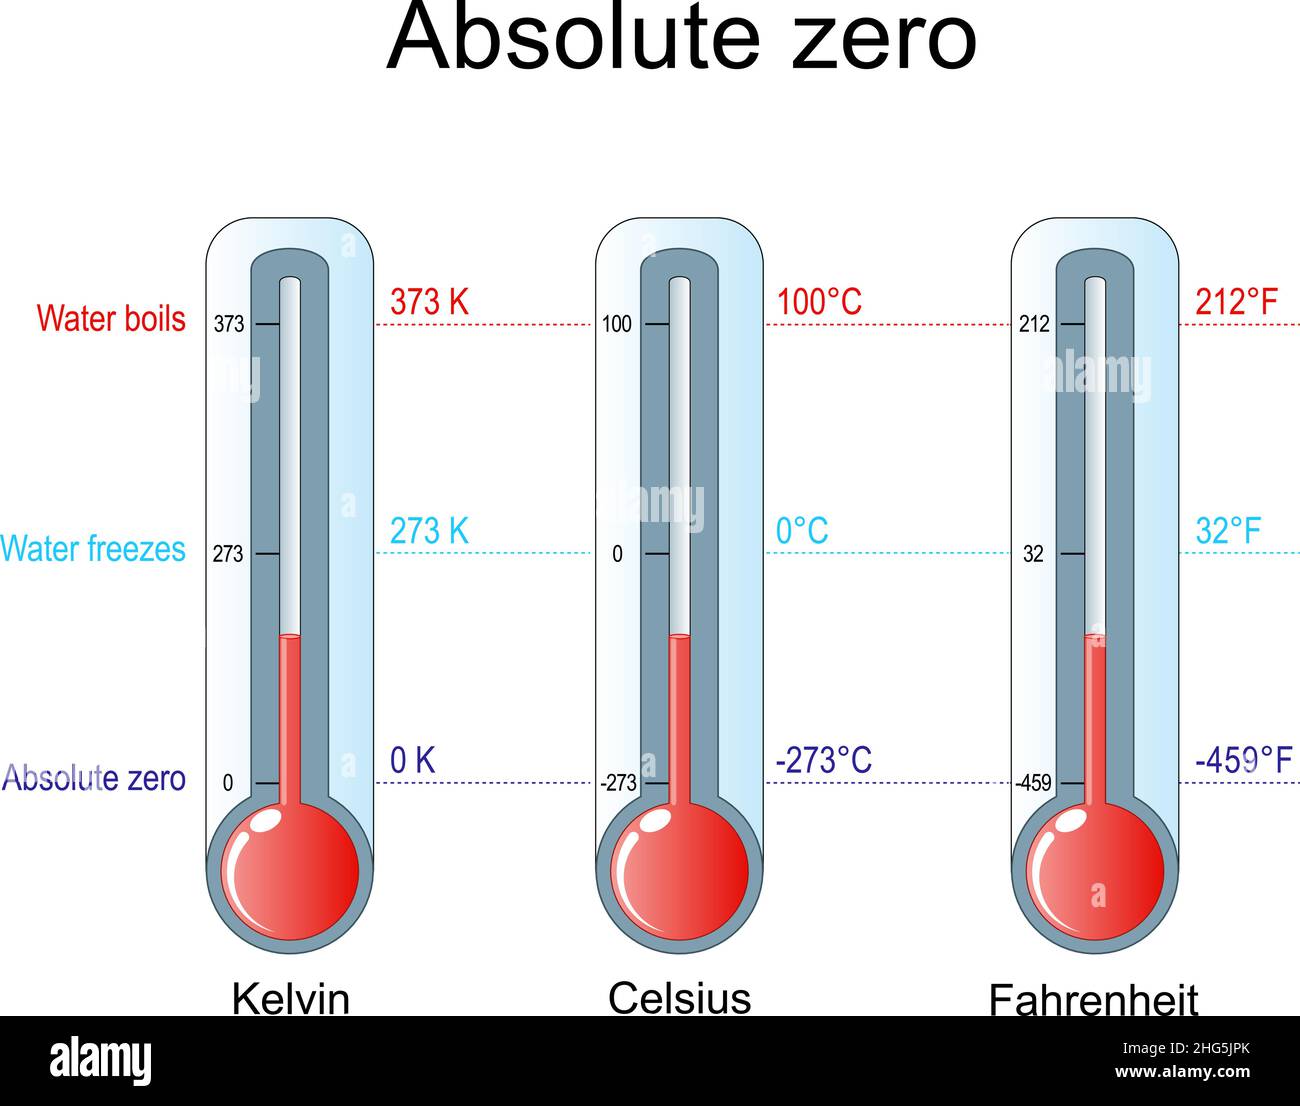 Zero assoluto, gela d'acqua e bolle d'acqua. Tre termometri con scala Celsius, Kelvin, Fahrenheit. Illustrazione vettoriale Illustrazione Vettoriale